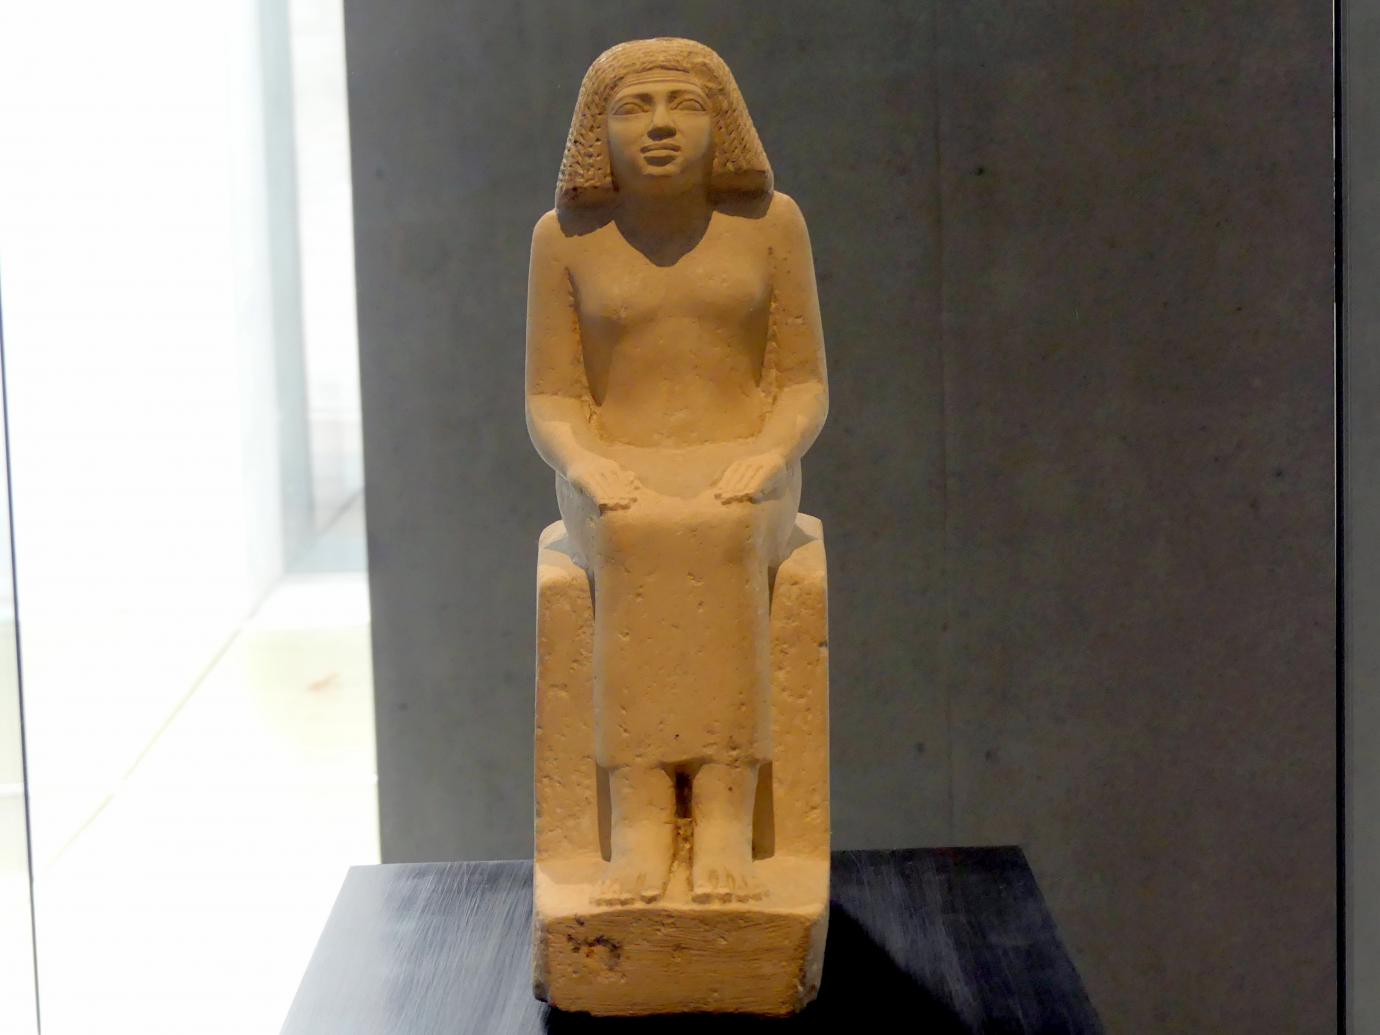 Sitzfigur der Königstochter Nefret-jabet, 4. Dynastie, 2462 - 2353 v. Chr., 2580 v. Chr., Bild 1/5